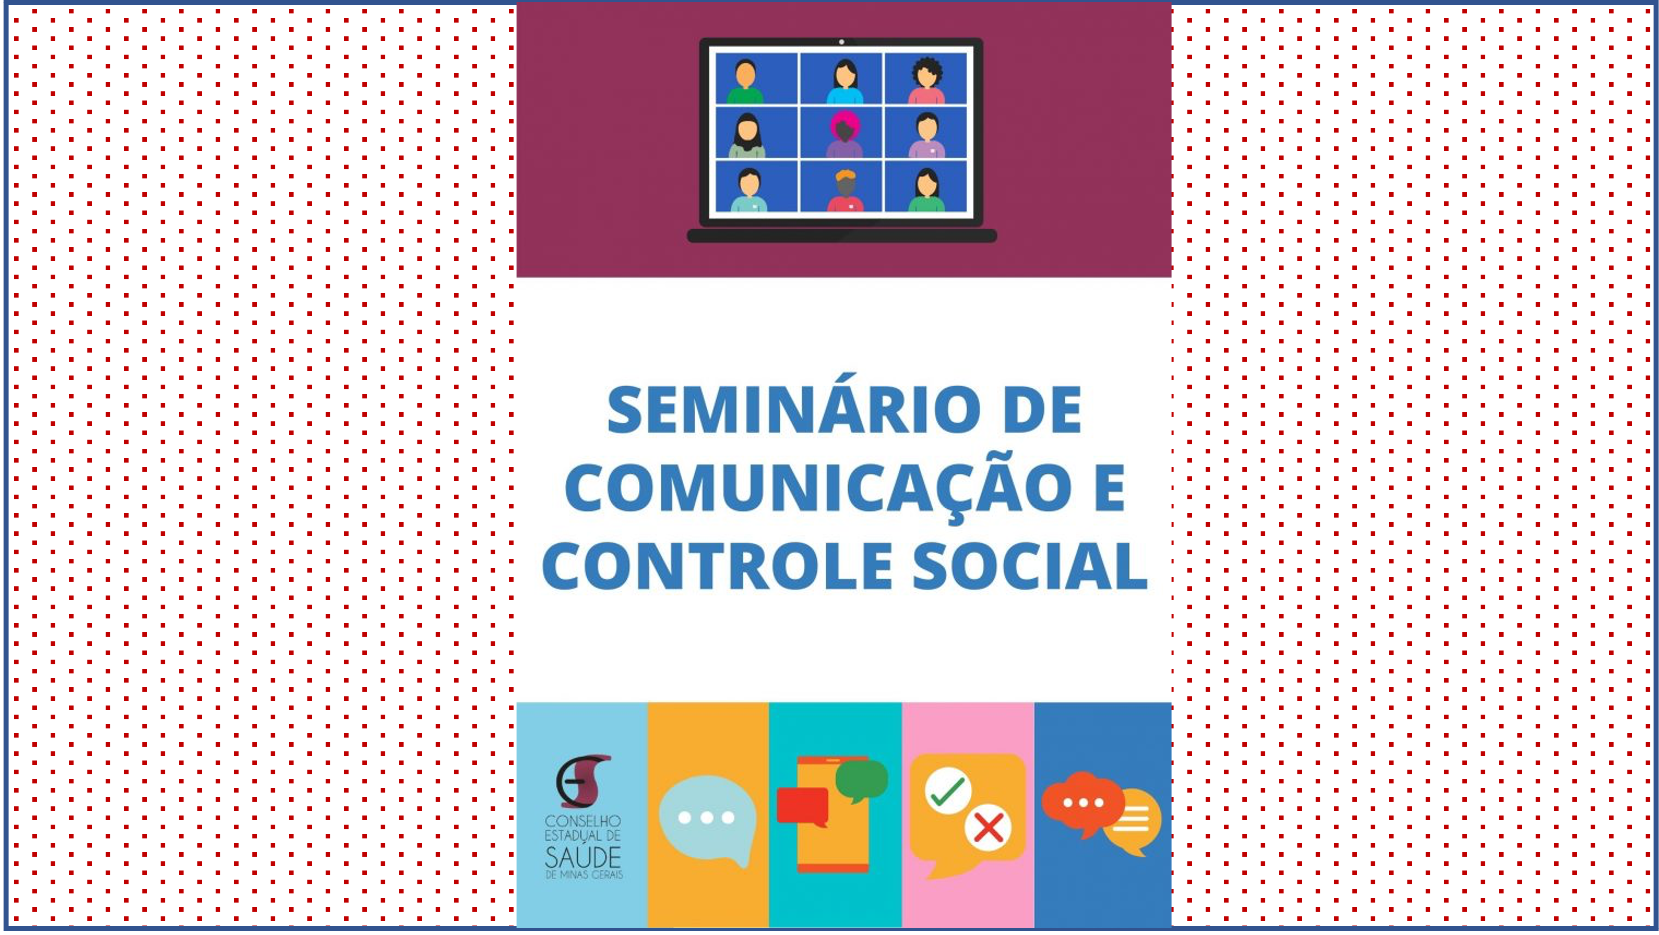 Participe do Seminário de Comunicação e Controle Social do CES-MG